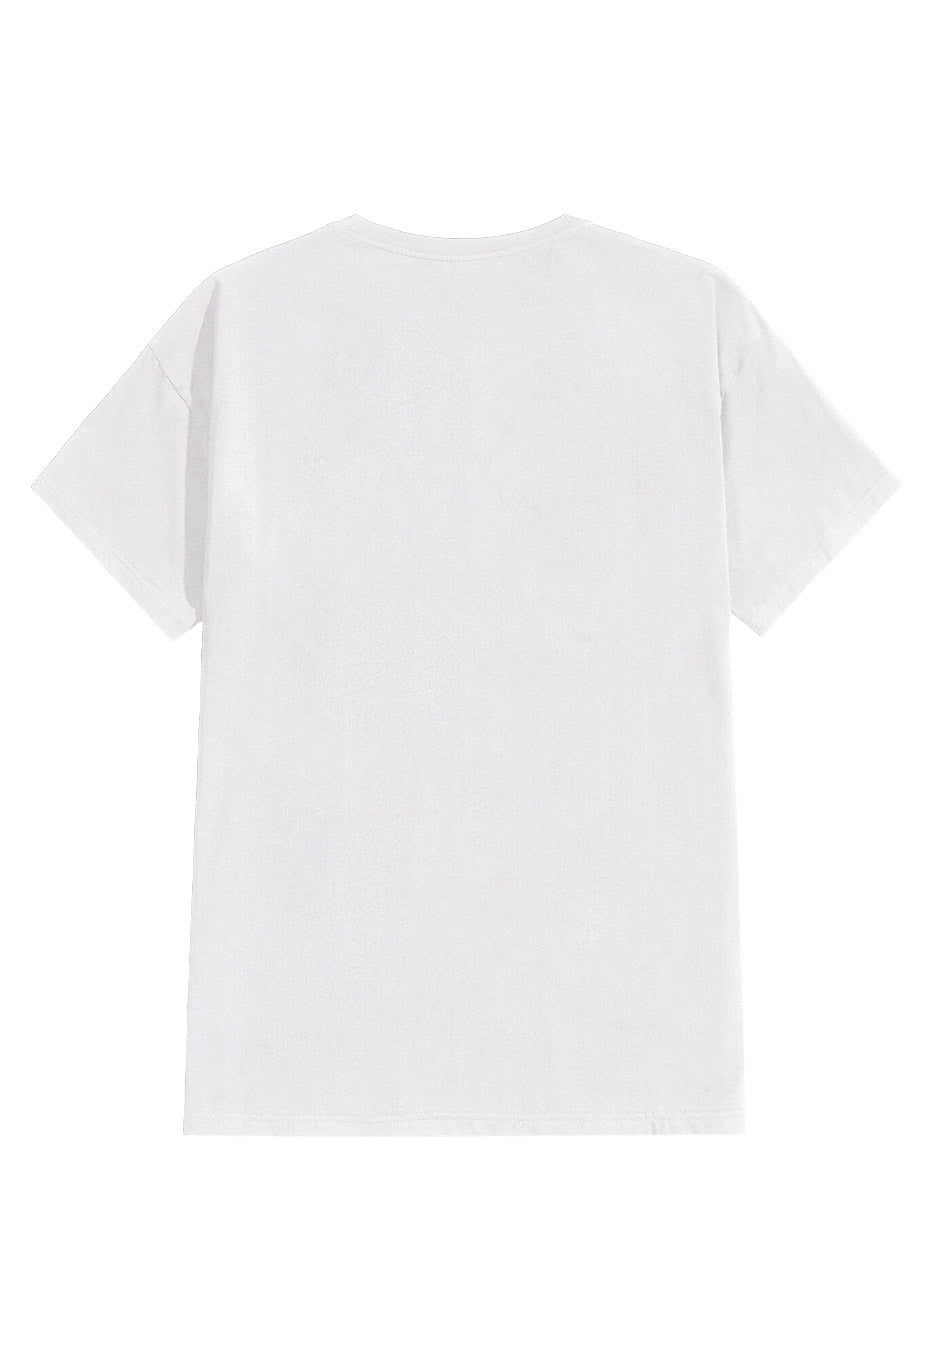 Gojira - Dragon's Dwell White - T-Shirt